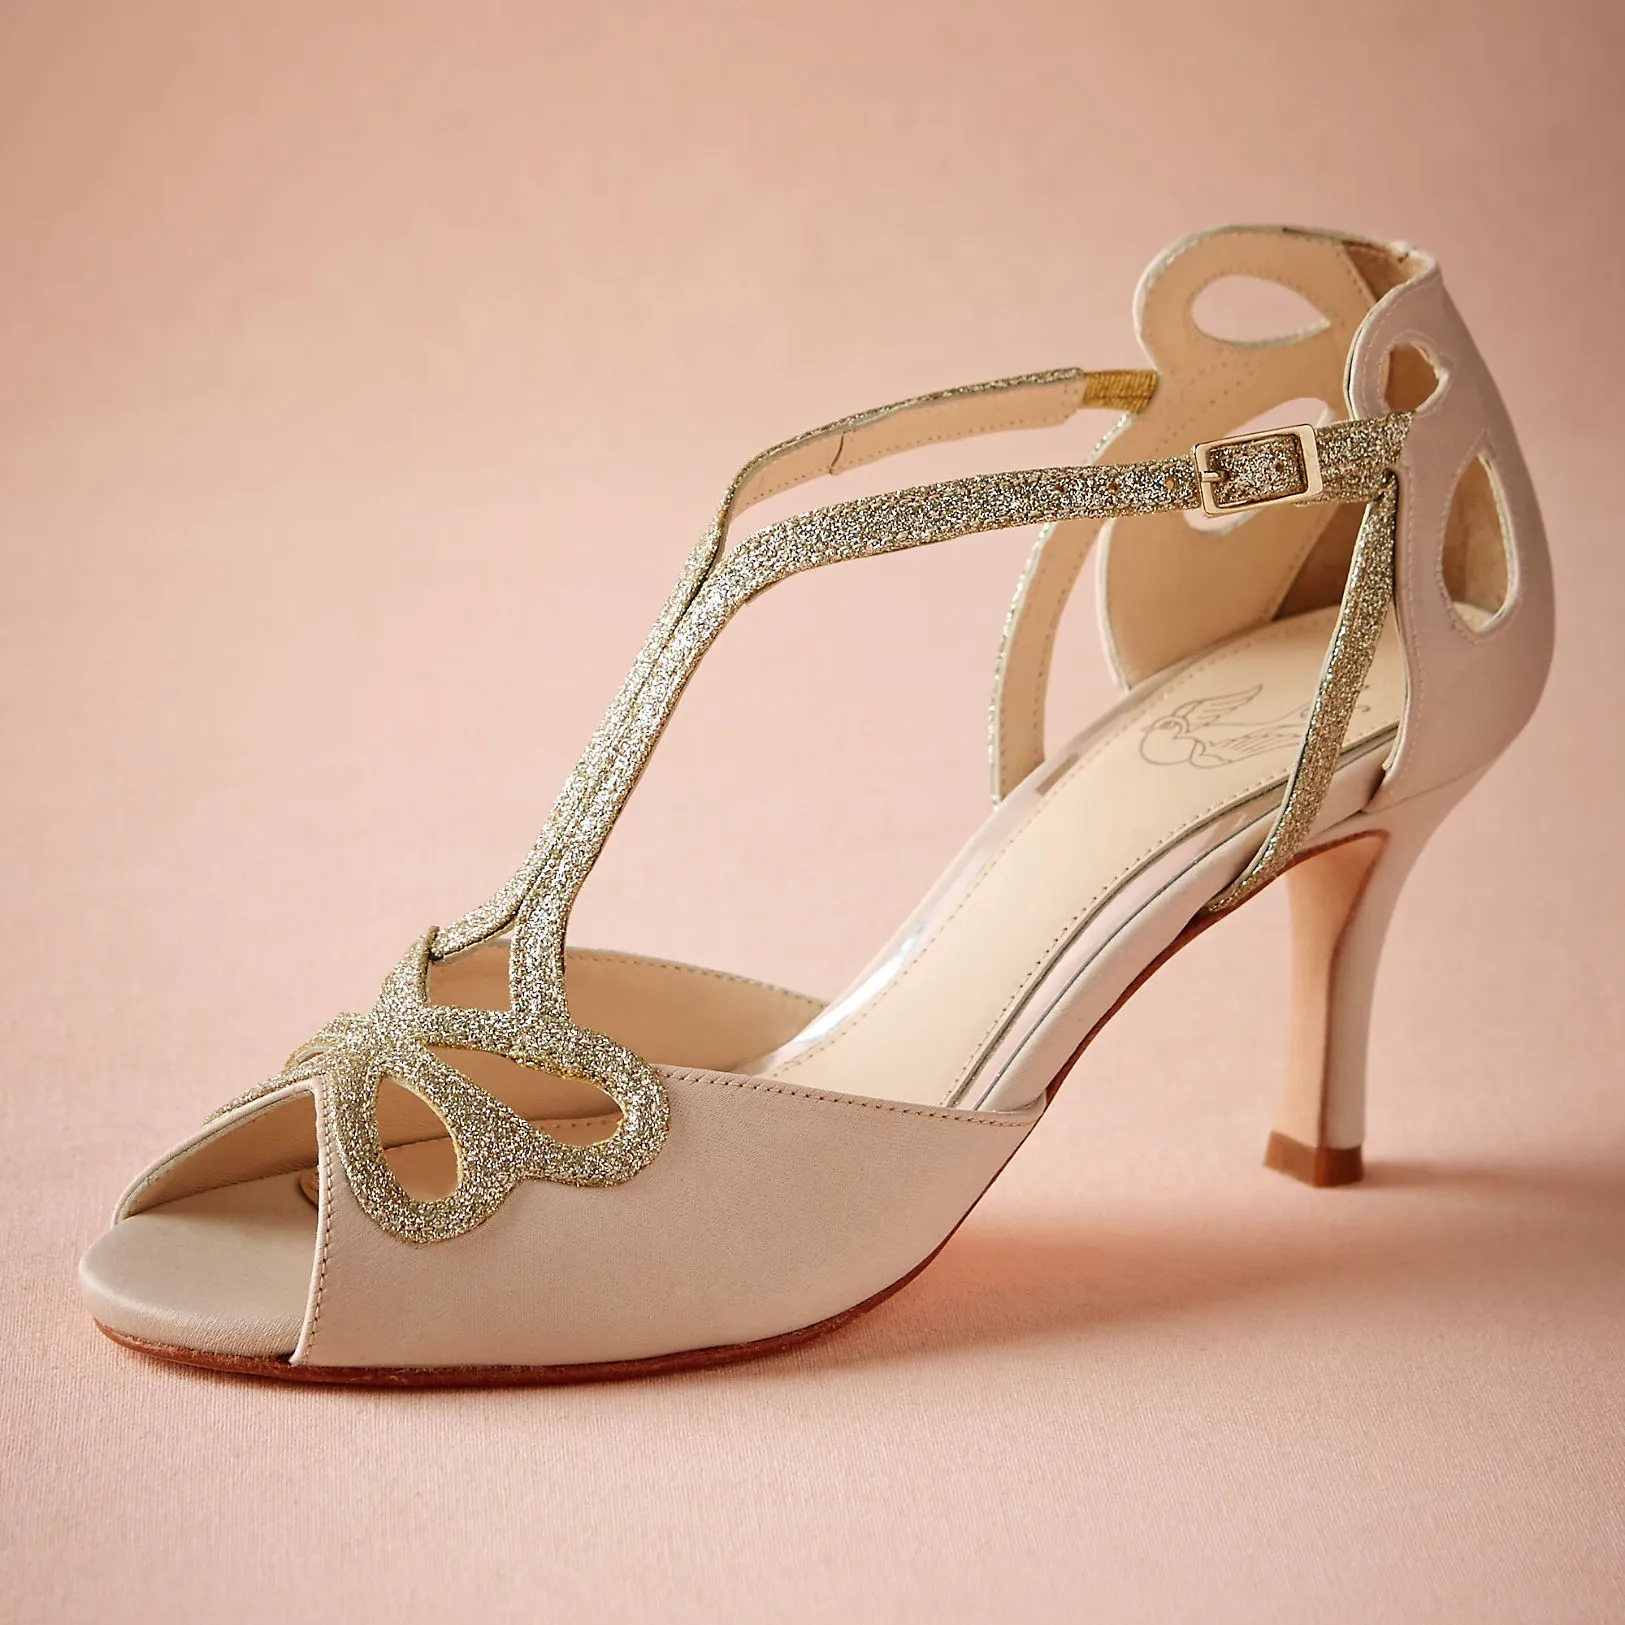 Blush chaussures de mariage à talons bas évider Peep Toe sandales de mariée pour femmes boucle 4 "talon enveloppé étincelles paillettes chaussures de bal soirée dansante